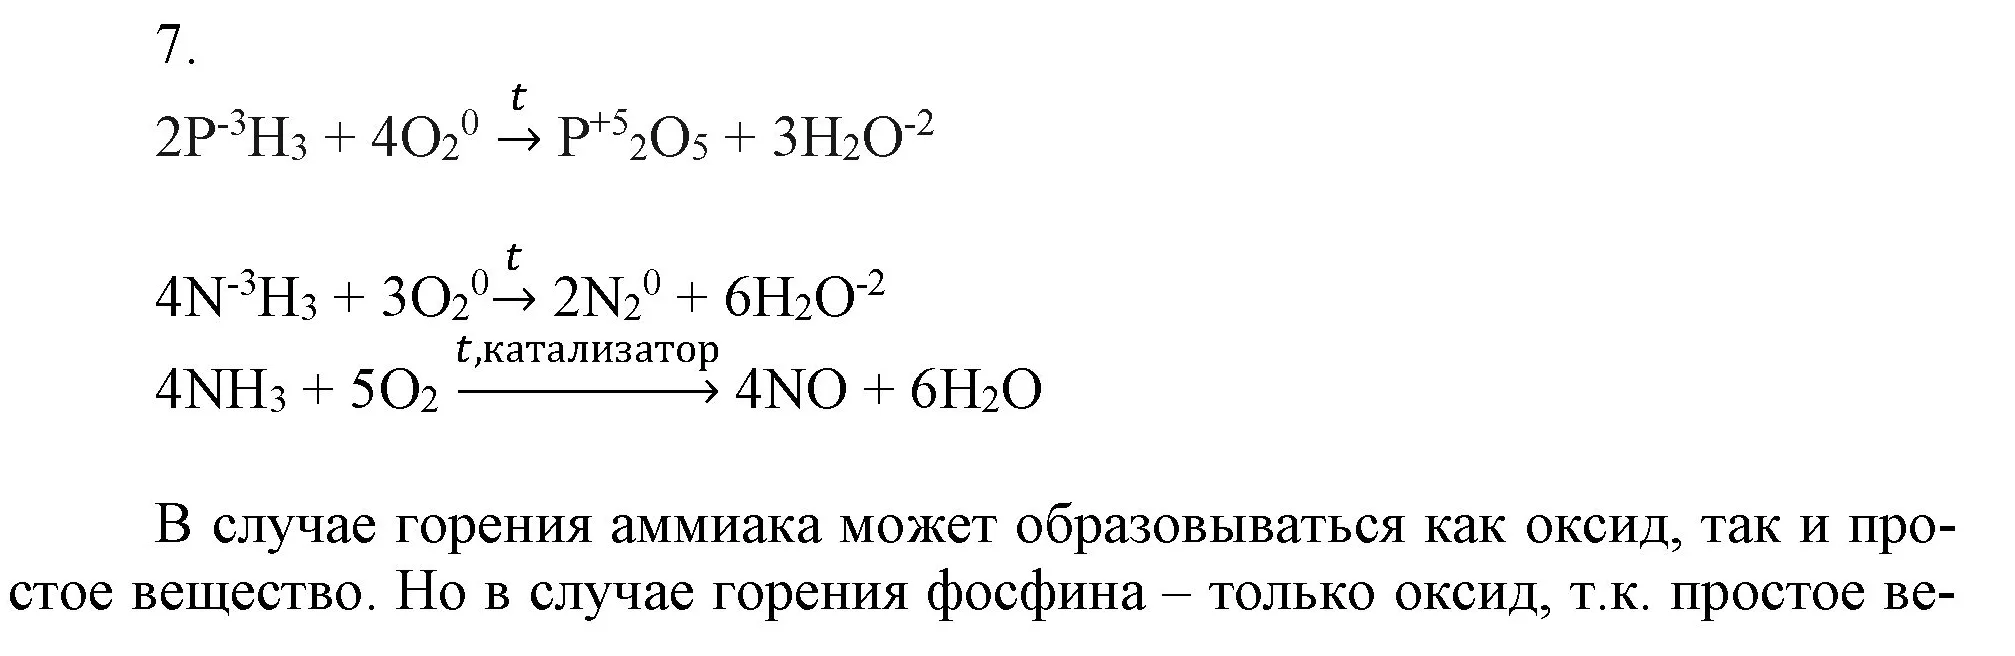 Решение номер 7 (страница 103) гдз по химии 9 класс Габриелян, Остроумов, учебник